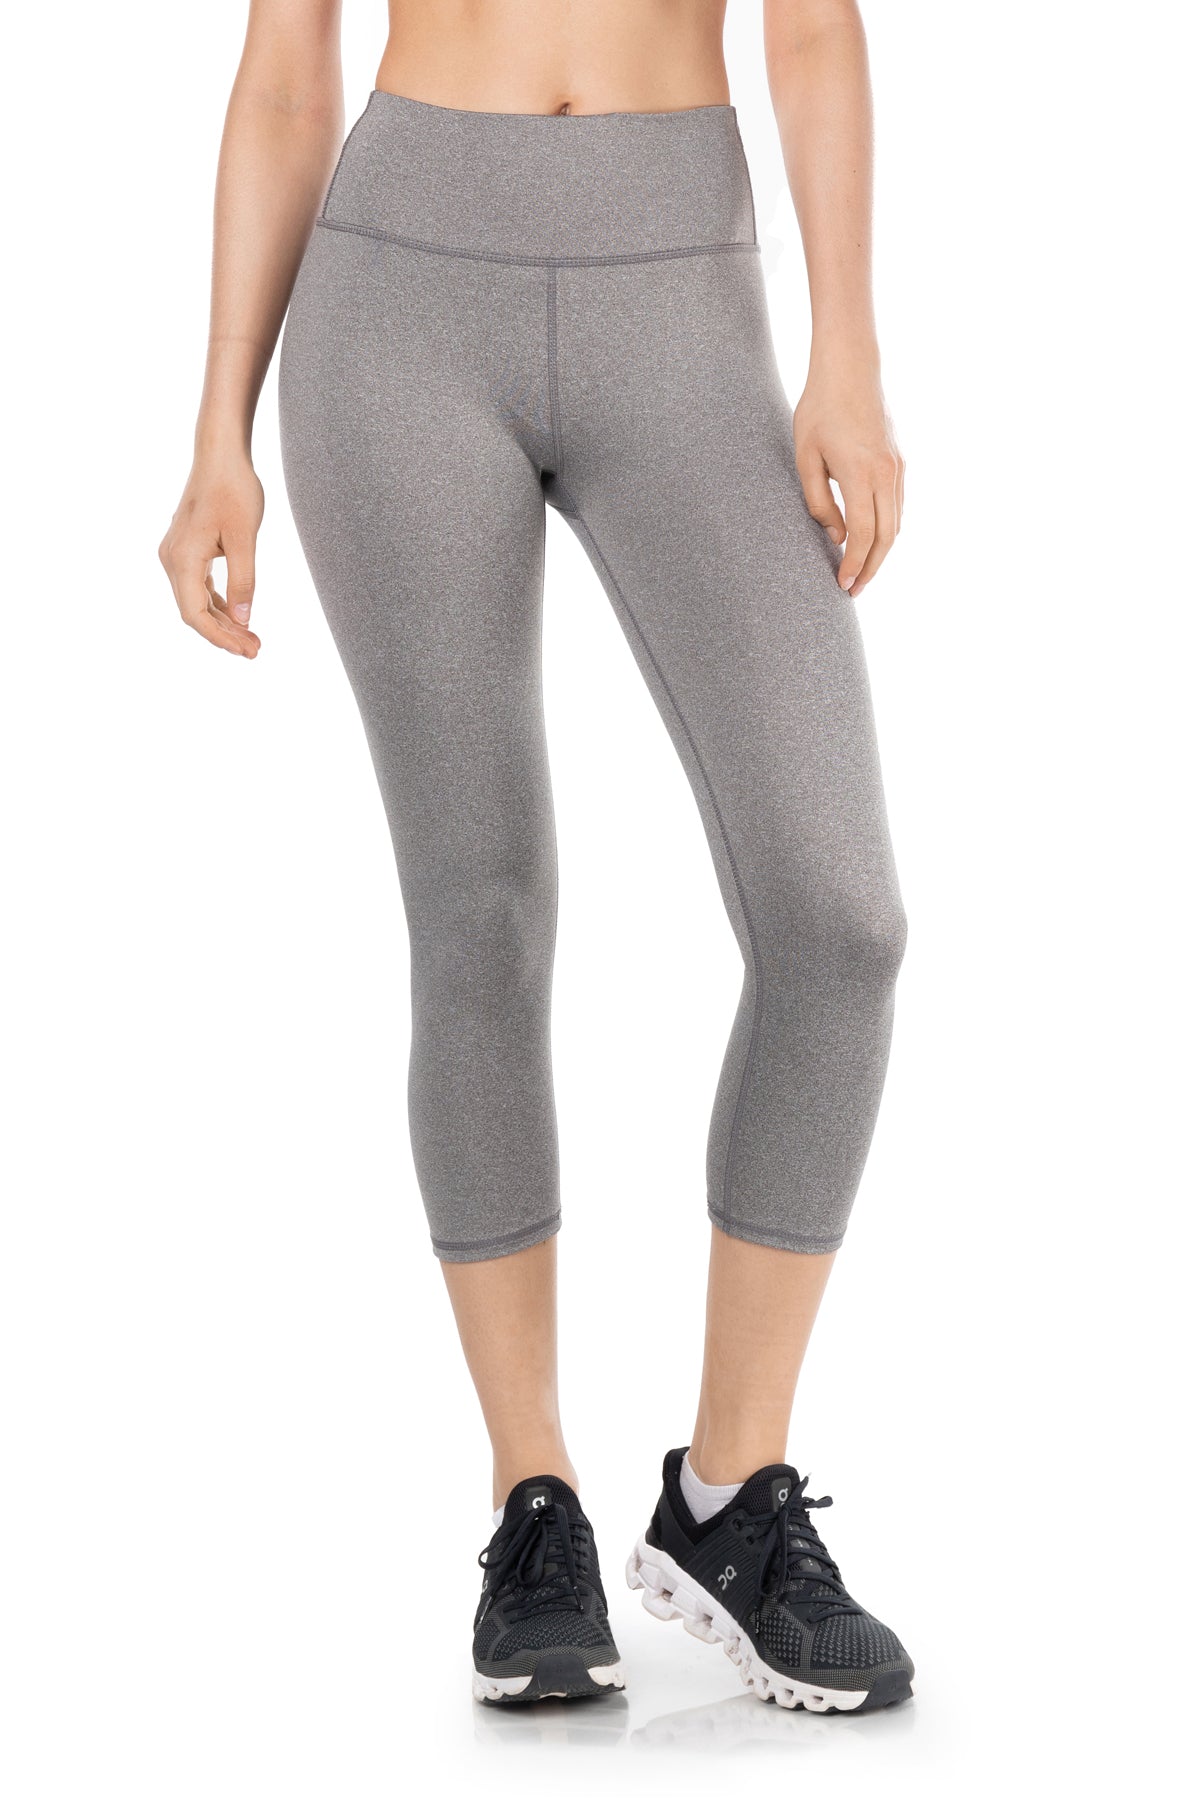 $58 Women's KYODAN Active Yoga Printed Leggings Capri Pants